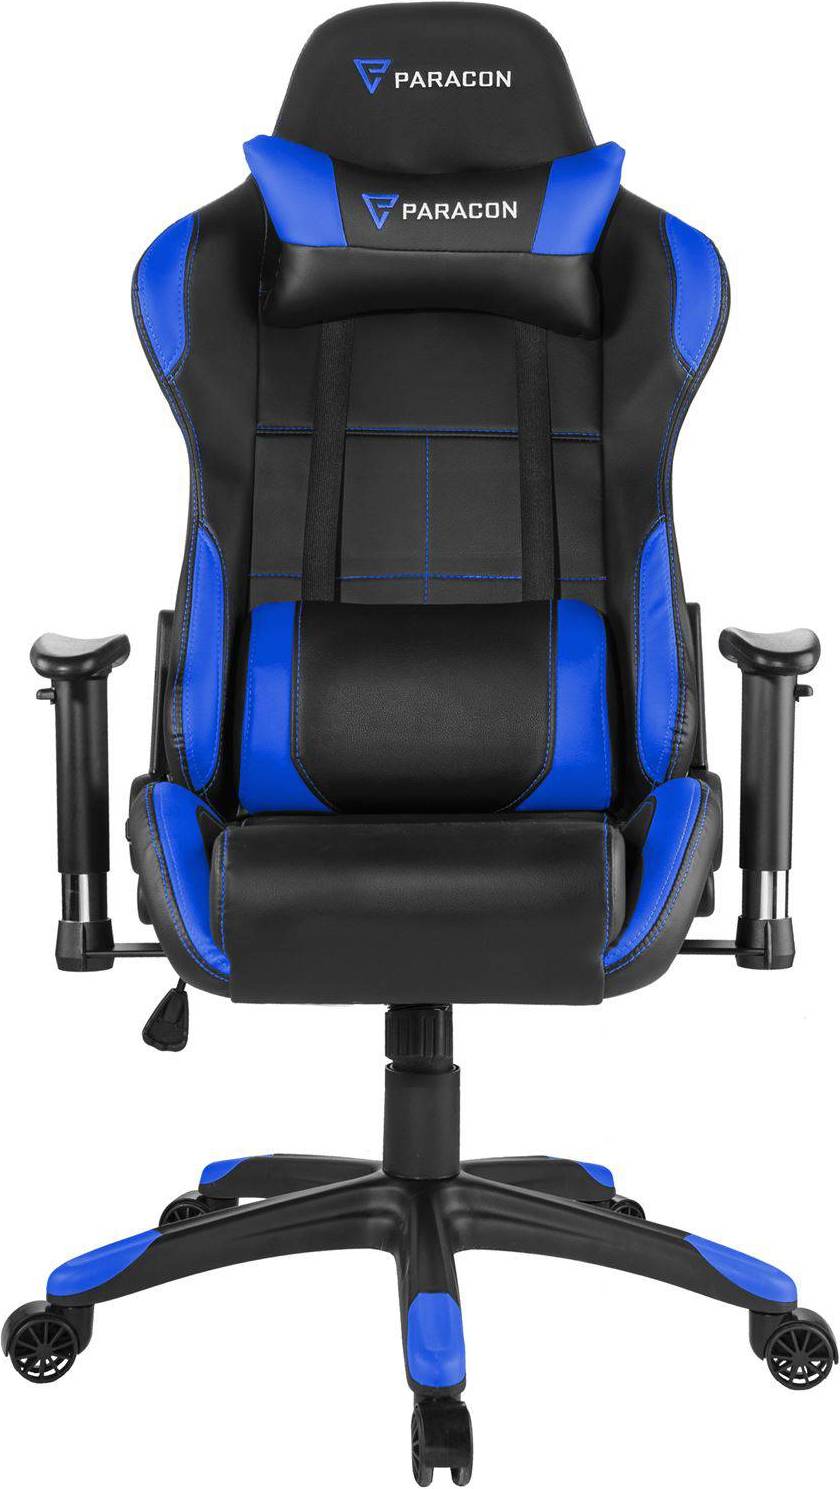  Bild på Paracon Rogue Gaming Chair - Black/Blue gamingstol